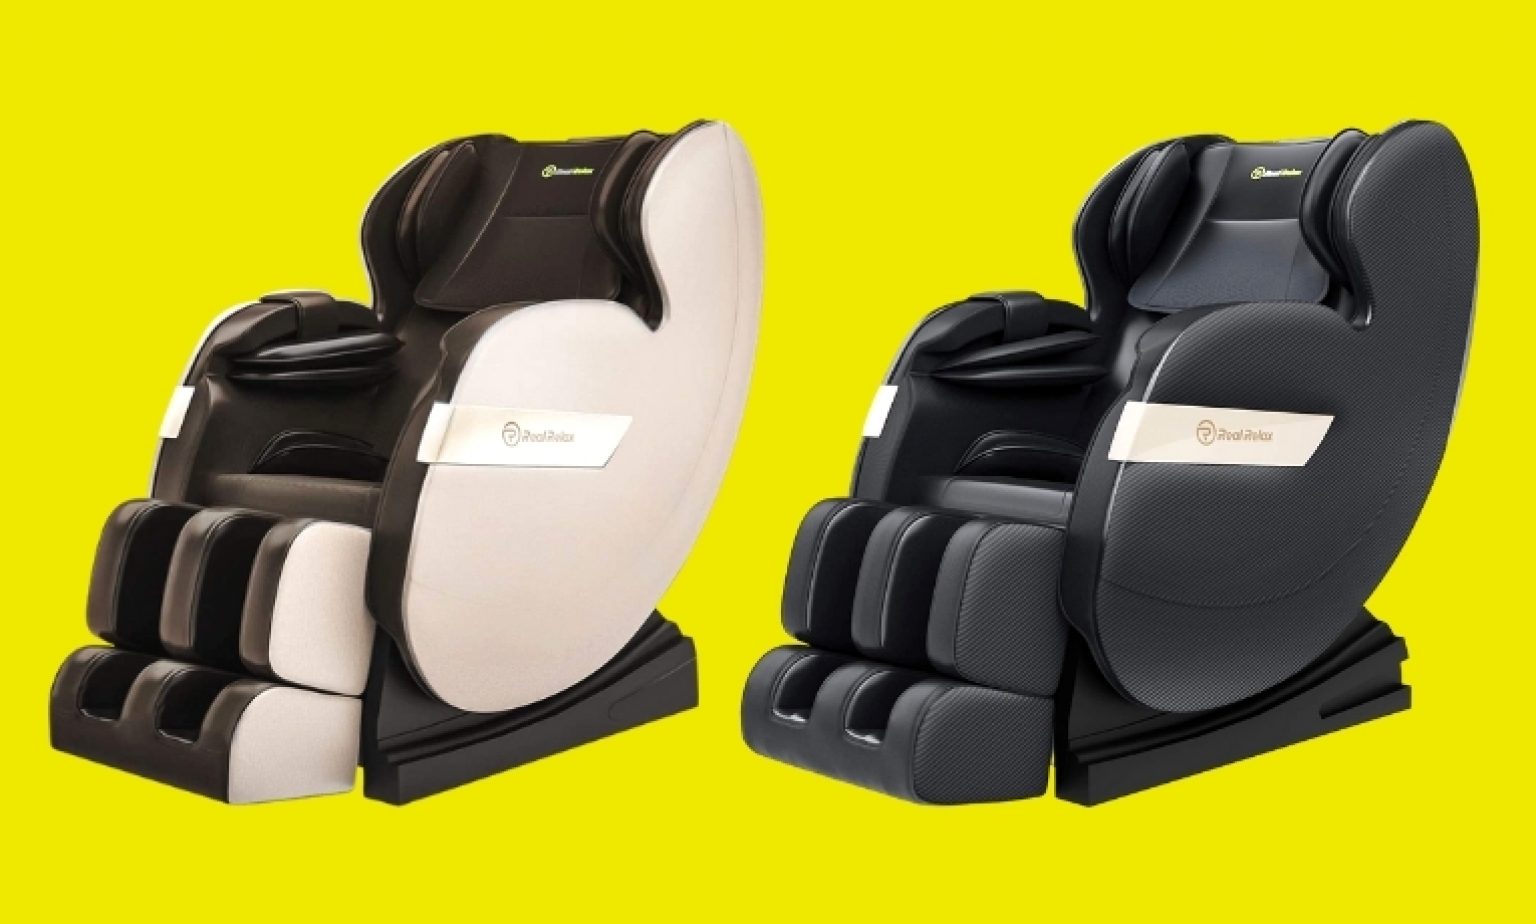 Real Relax Zero Gravity Massage Chair: A Shiatsu Styled Massage